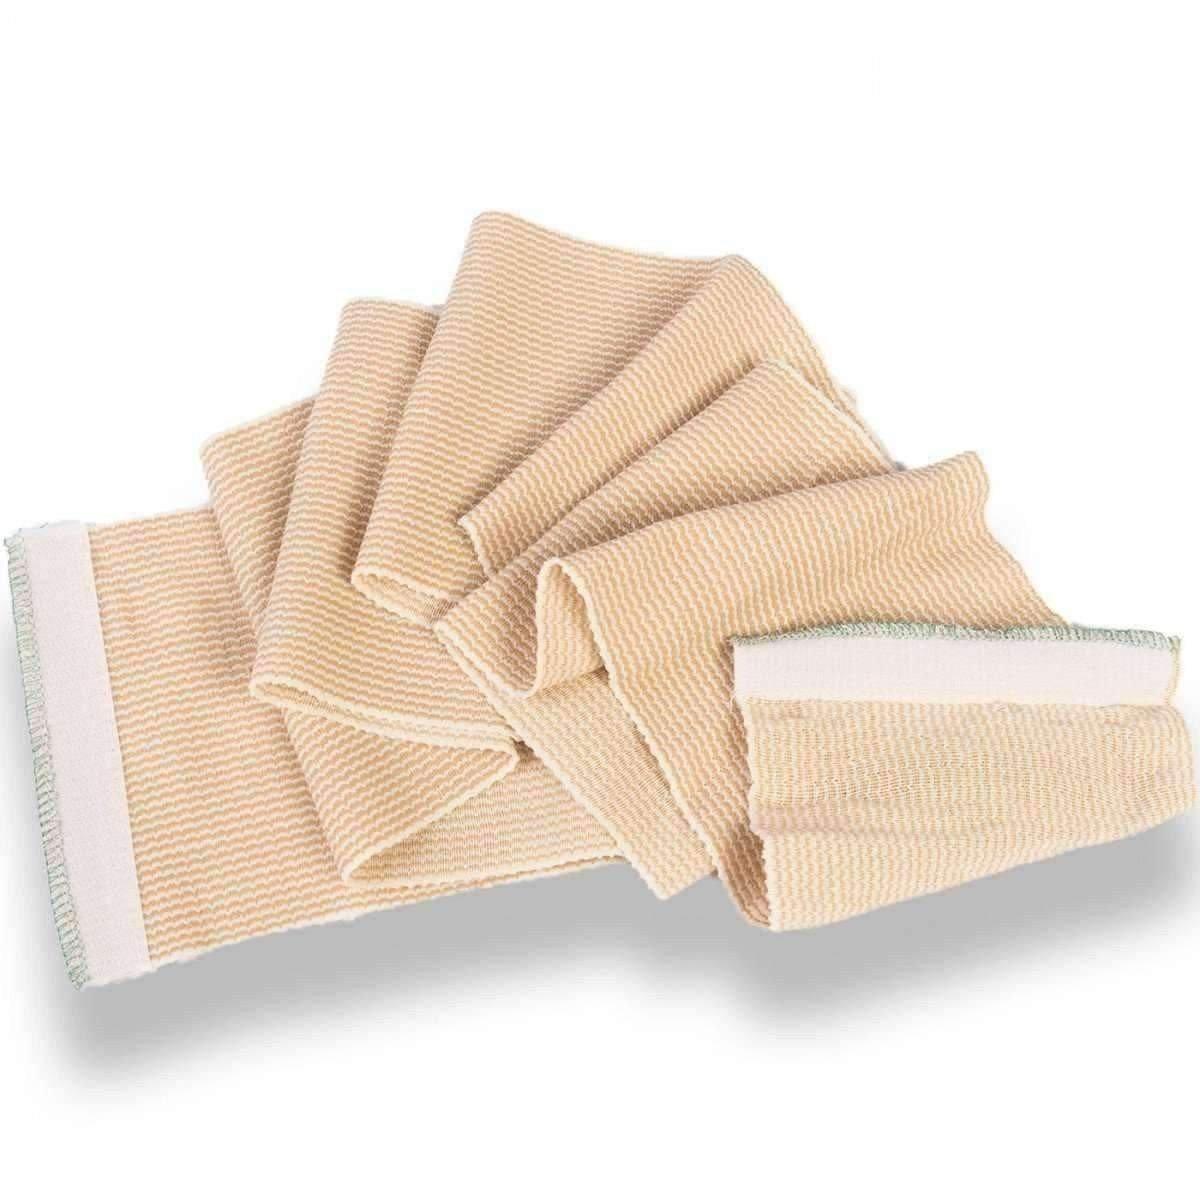 Elastic Wrap Bandages - Vendor